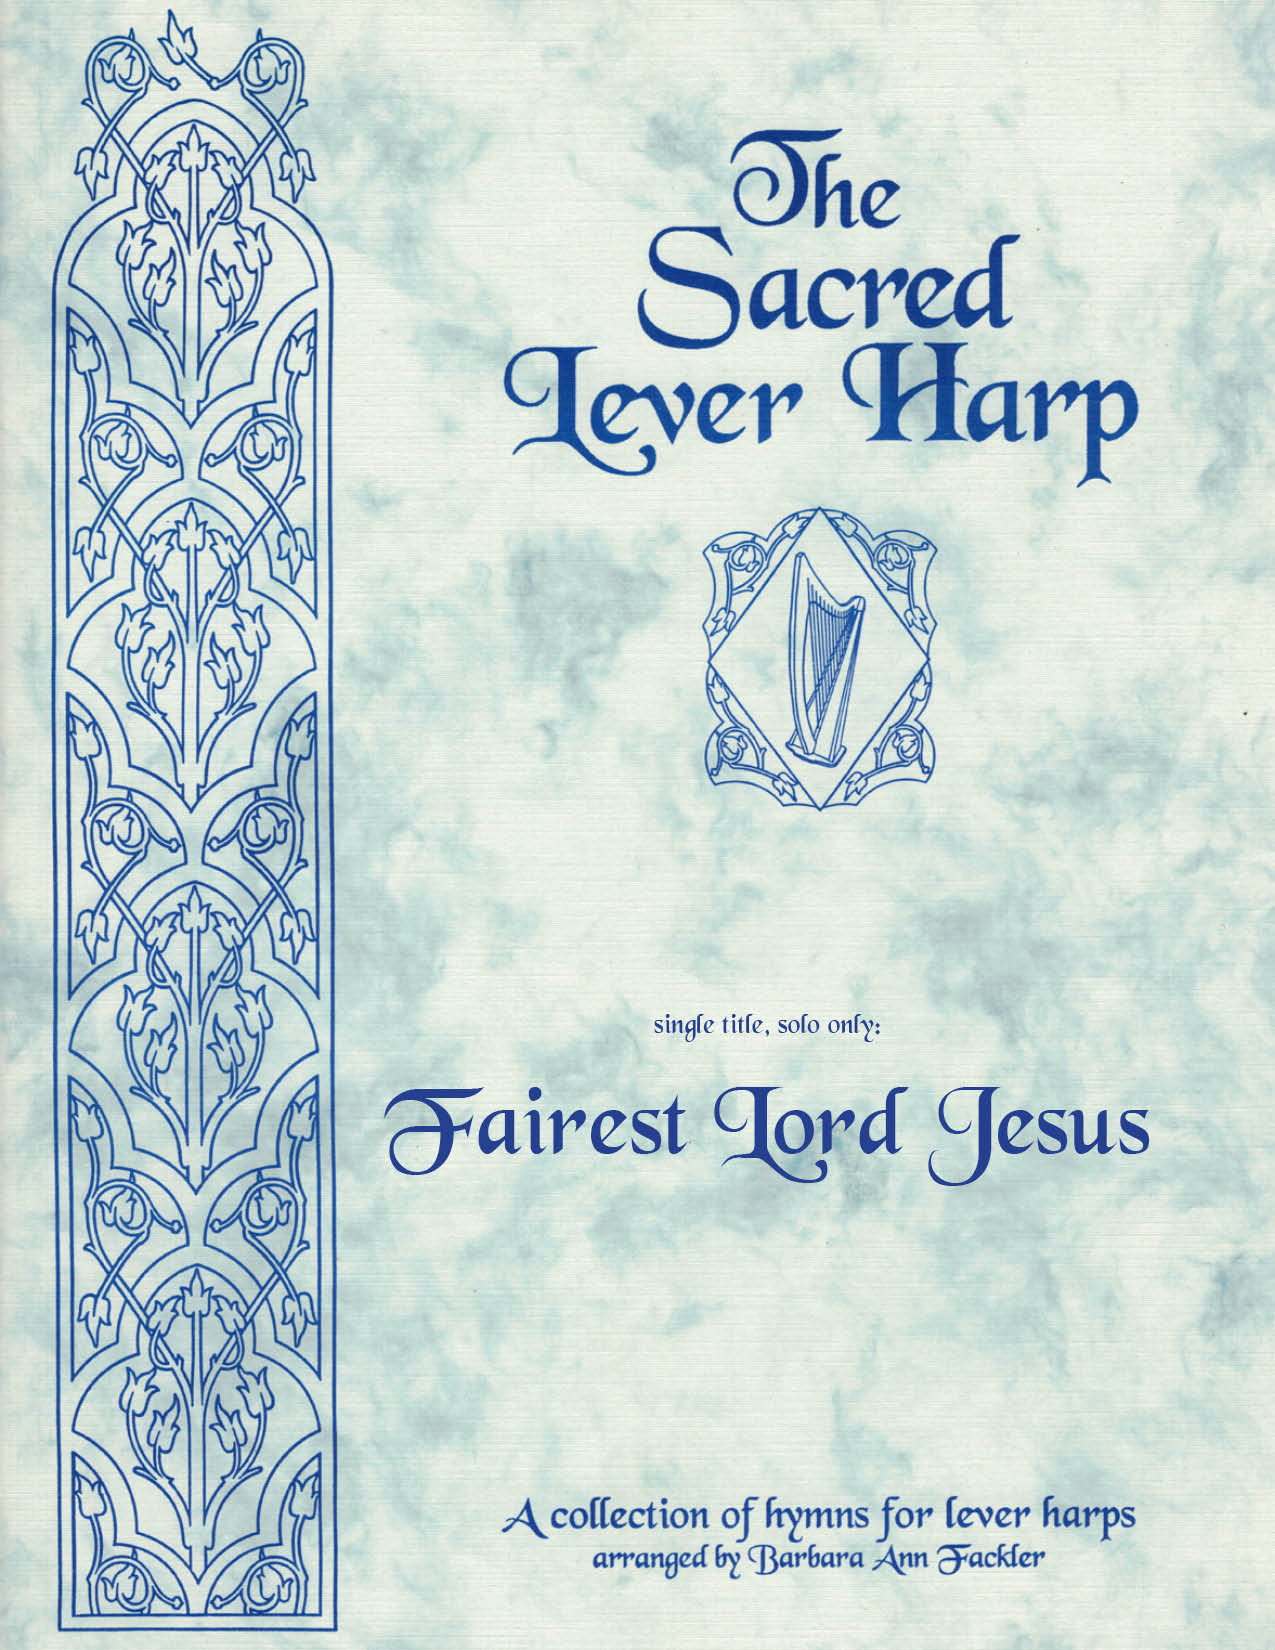 Fairest Lord Jesus - intermediate lever harp solo